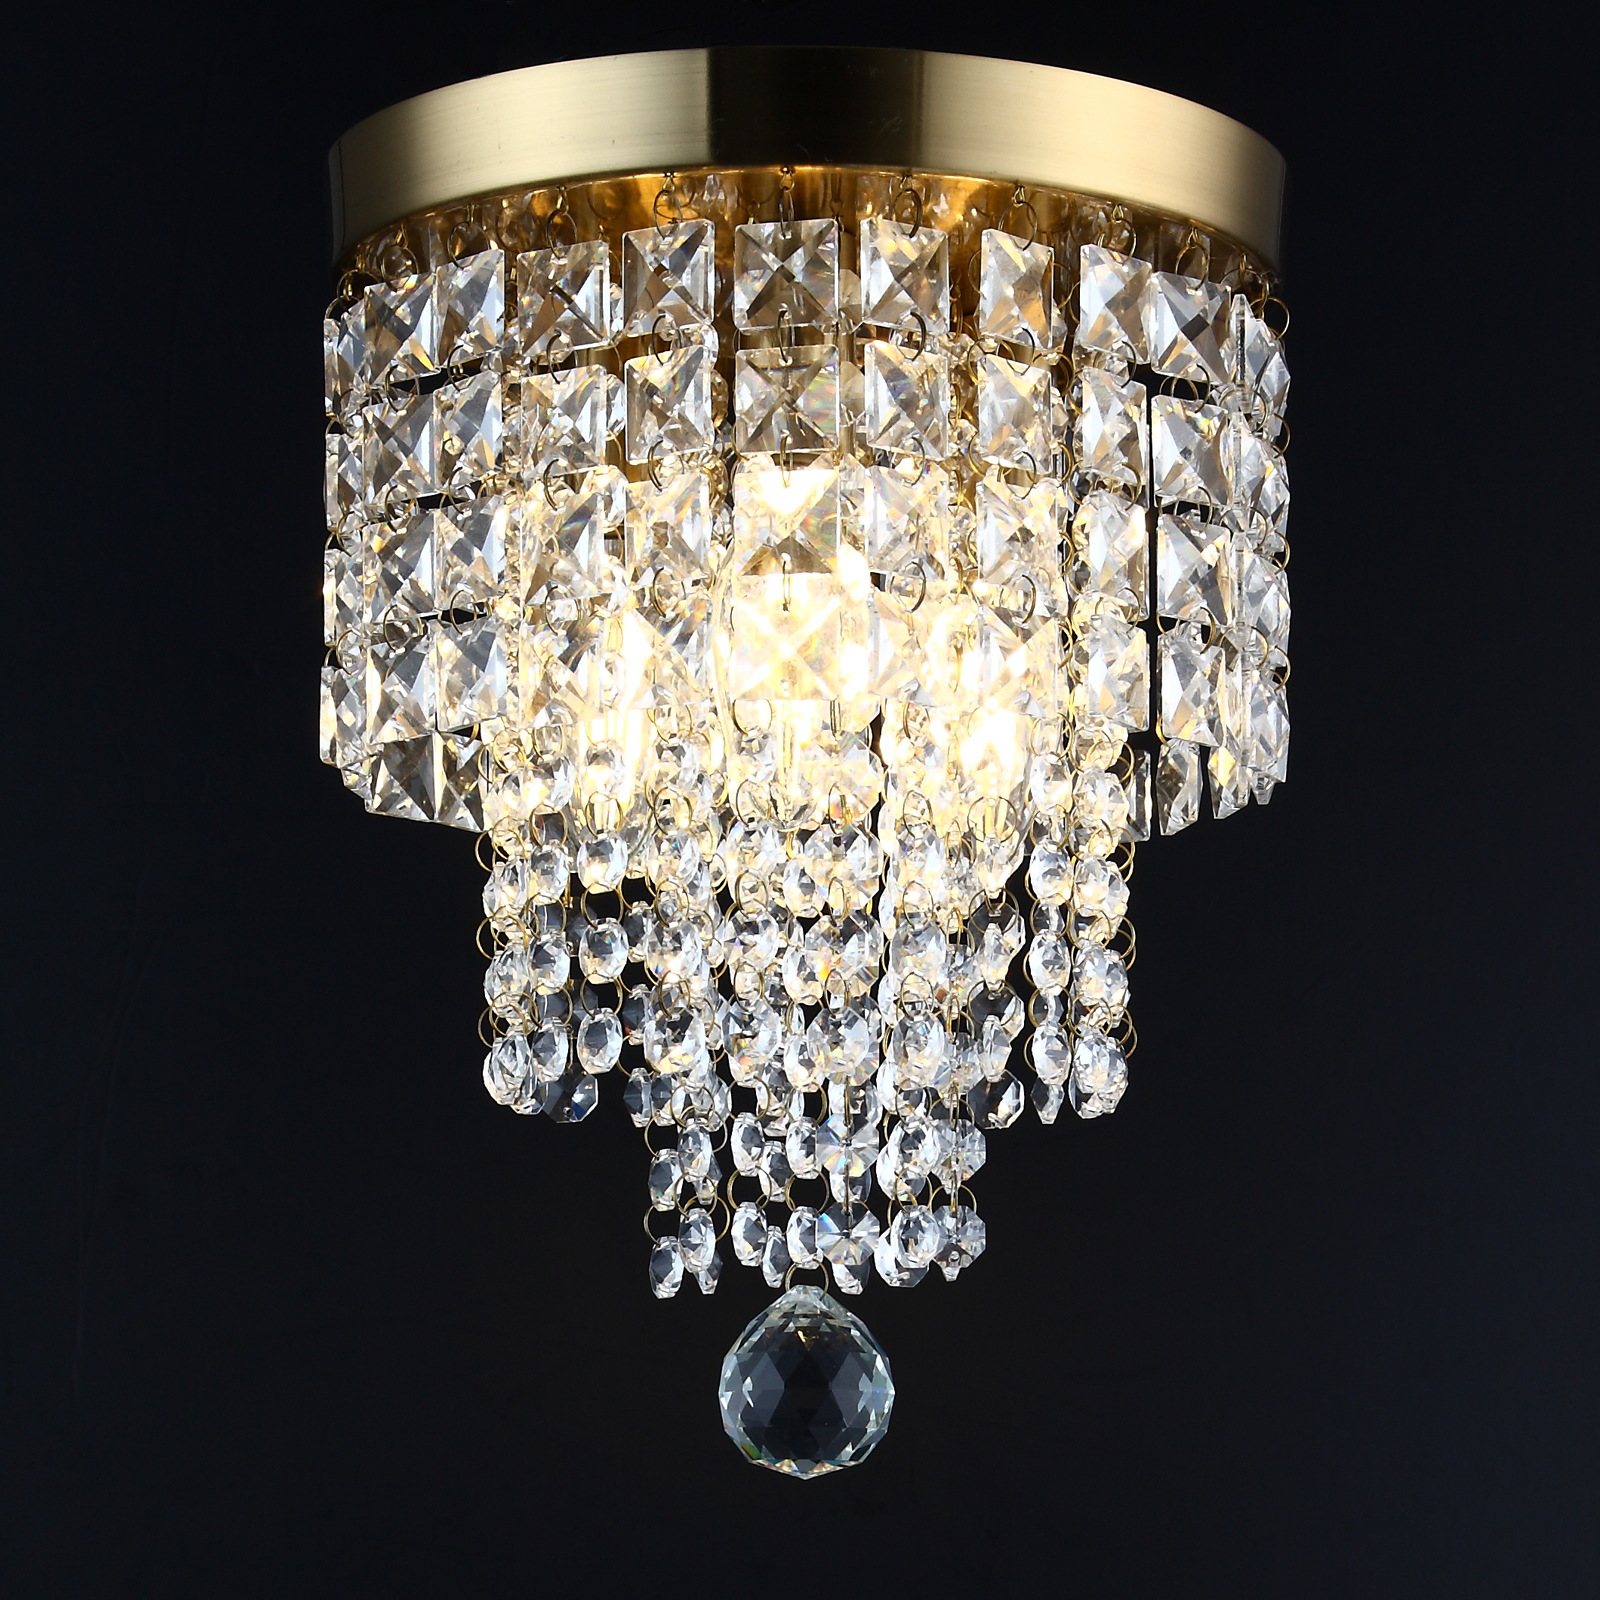 Lustre pequeno de cristal dourado com 3 lâmpadas, luminária pendente de teto embutida para quarto, sala de estar, sala de jantar